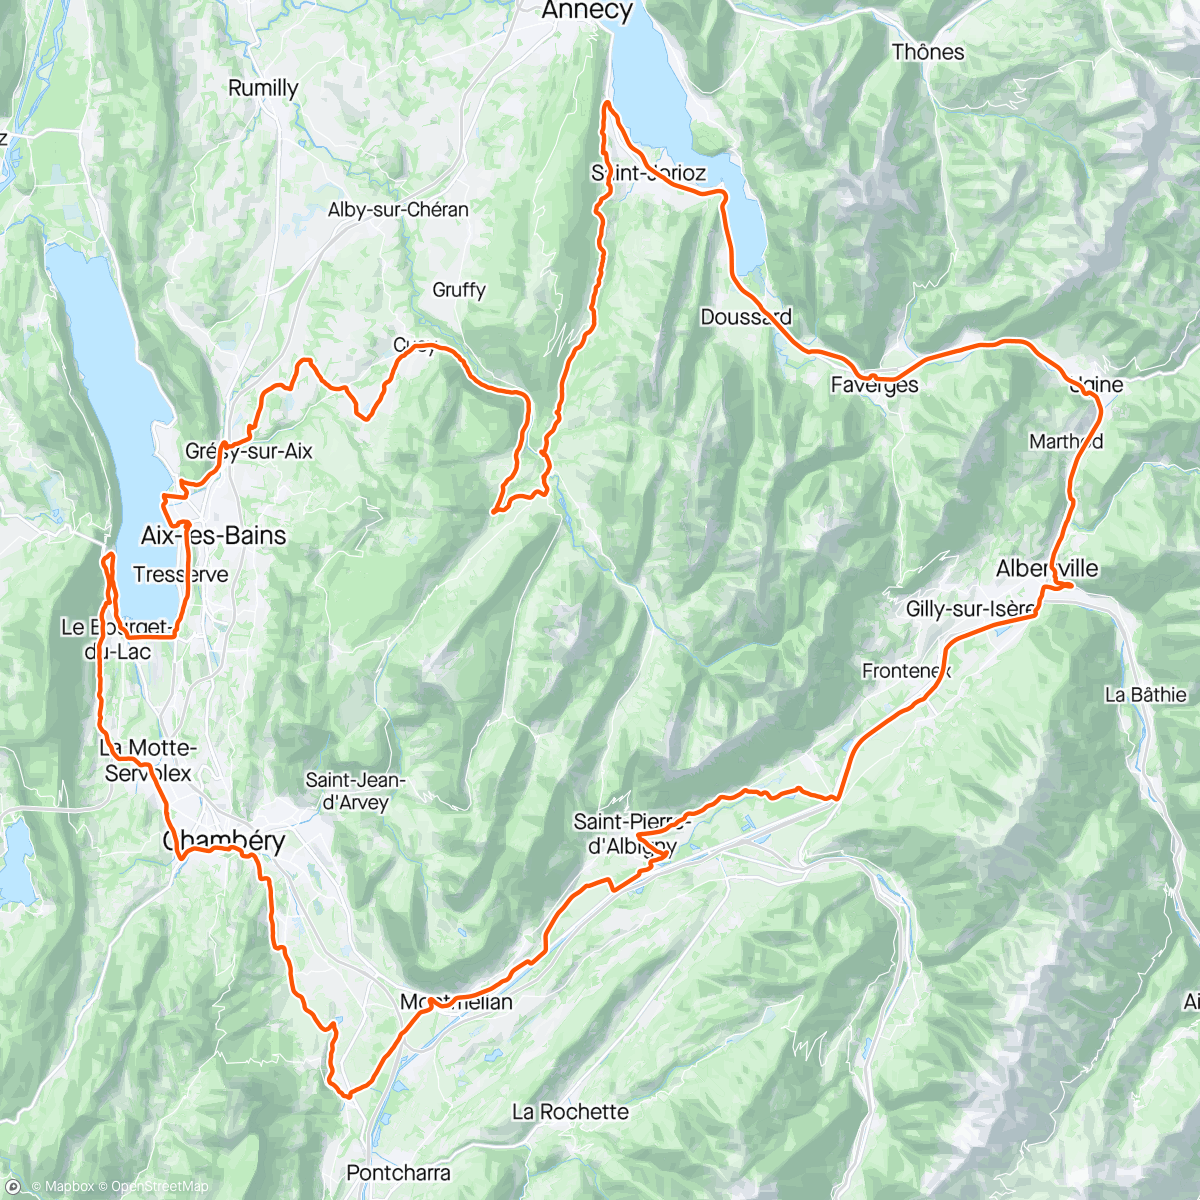 「La Ronde des Fruitières Baujues "petit plateau"」活動的地圖